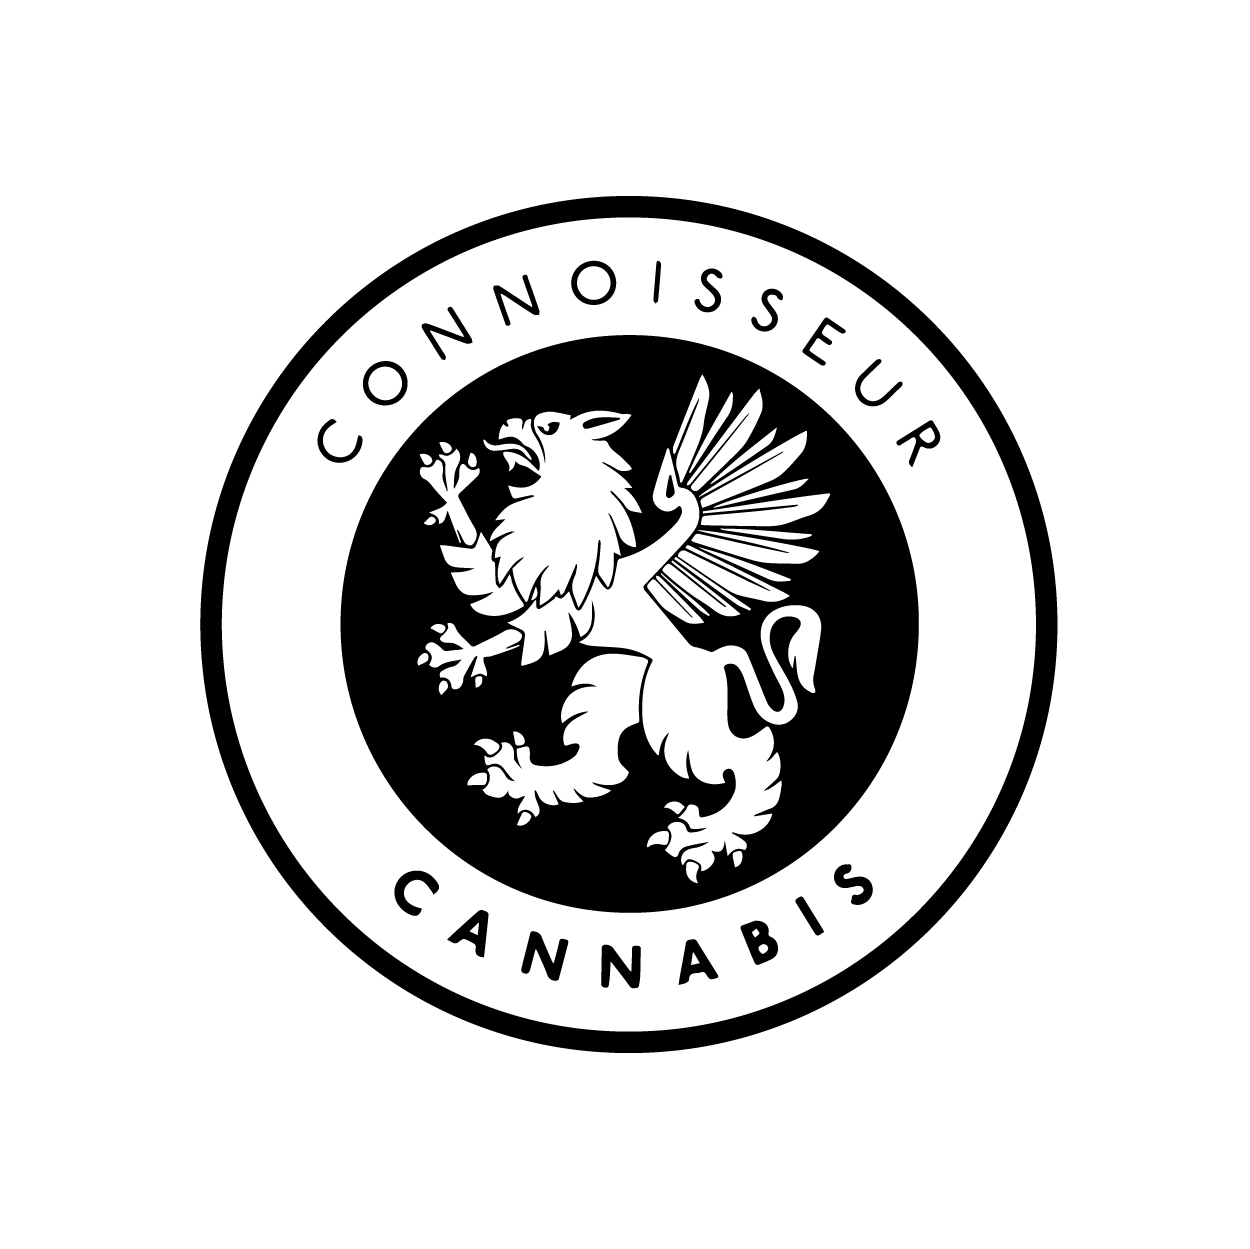 Connoisseur Cannabis - Oregon